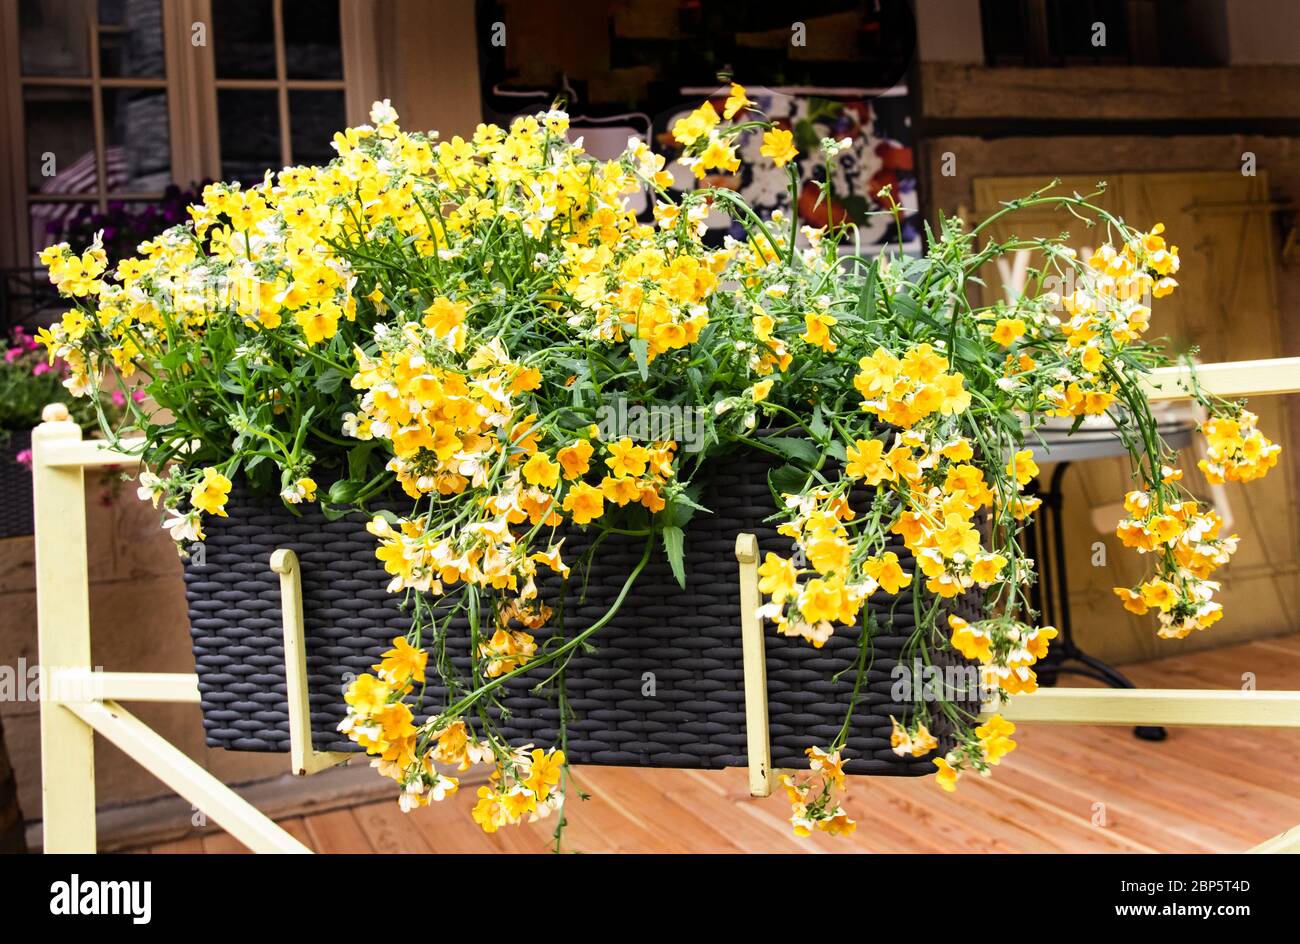 amarilla en verano. Flores en una olla colgante. Decoración de la terraza de verano con cajones colgantes con flores amarillas. Florística y deco Fotografía de stock - Alamy